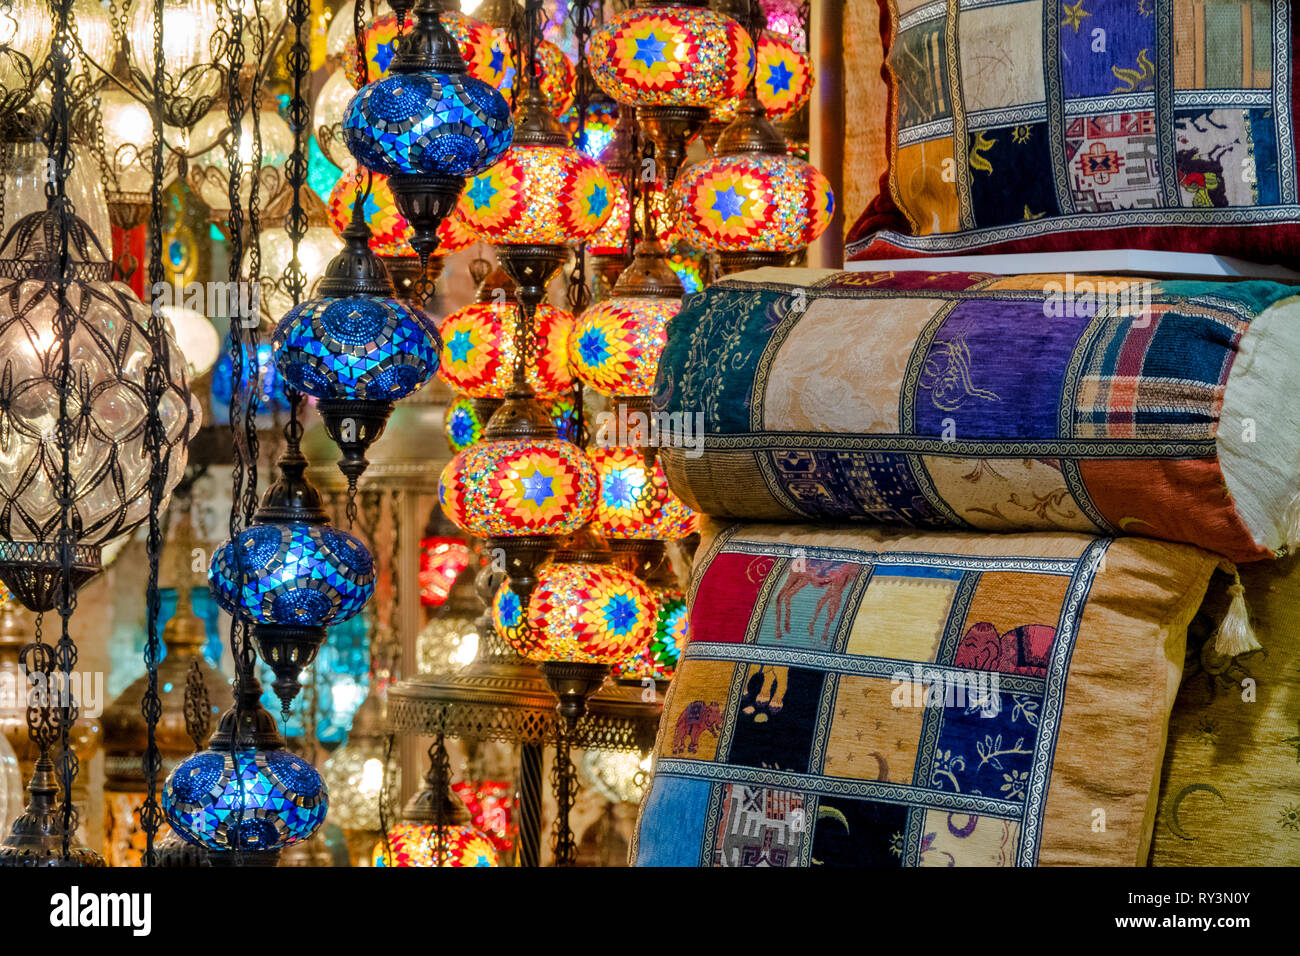 Nahaufnahme von einem hängenden Mosaik Lampe und Kissen in der Große Bazar, Istanbul, Türkei Stockfoto